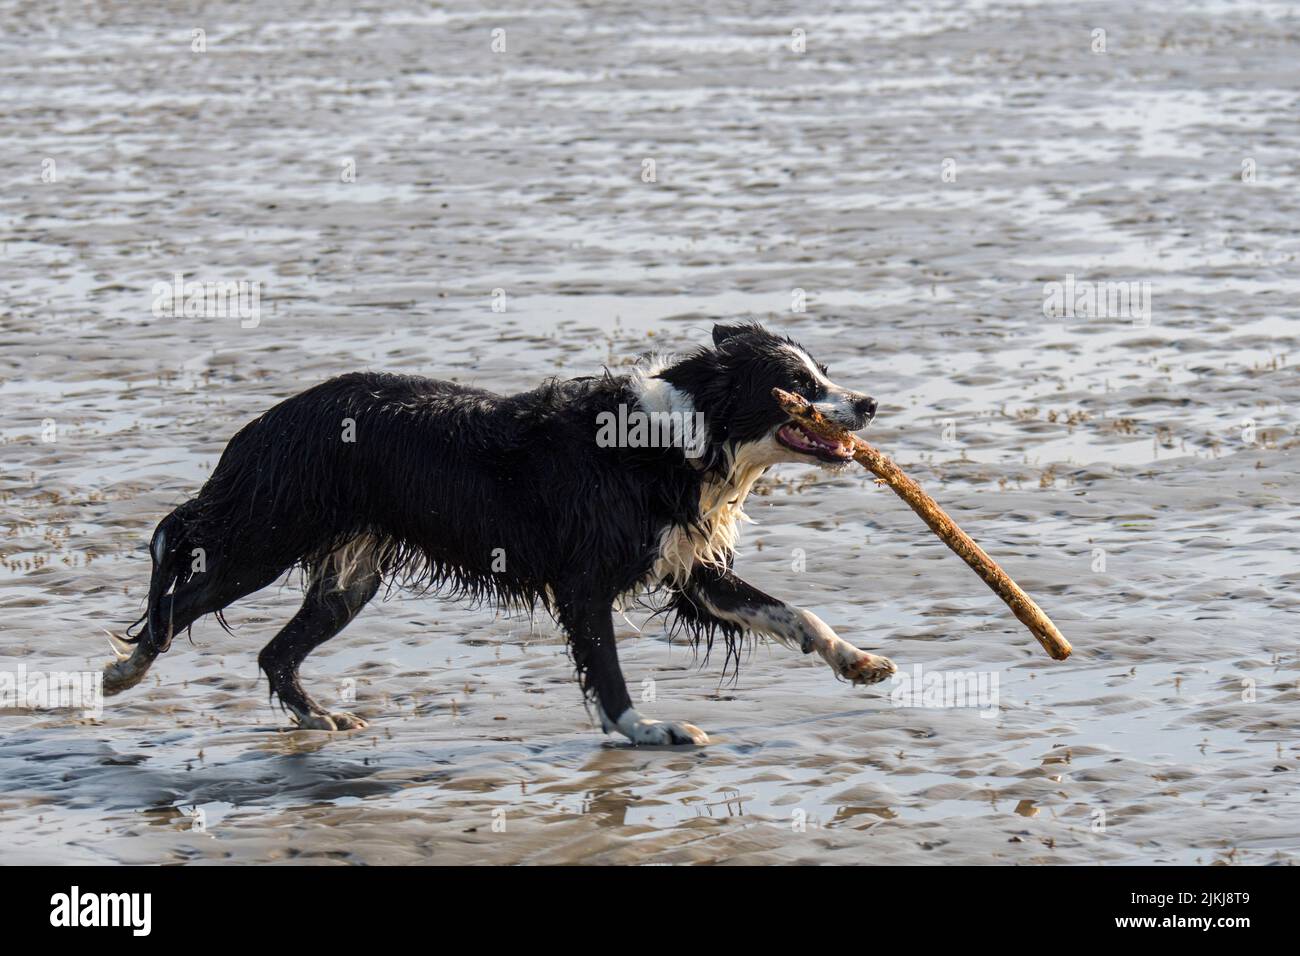 Negro y blanco frontera Collie correr y jugar a buscar con gran rama en la boca en la playa de arena en la marea baja a lo largo de la costa del Mar del Norte Foto de stock